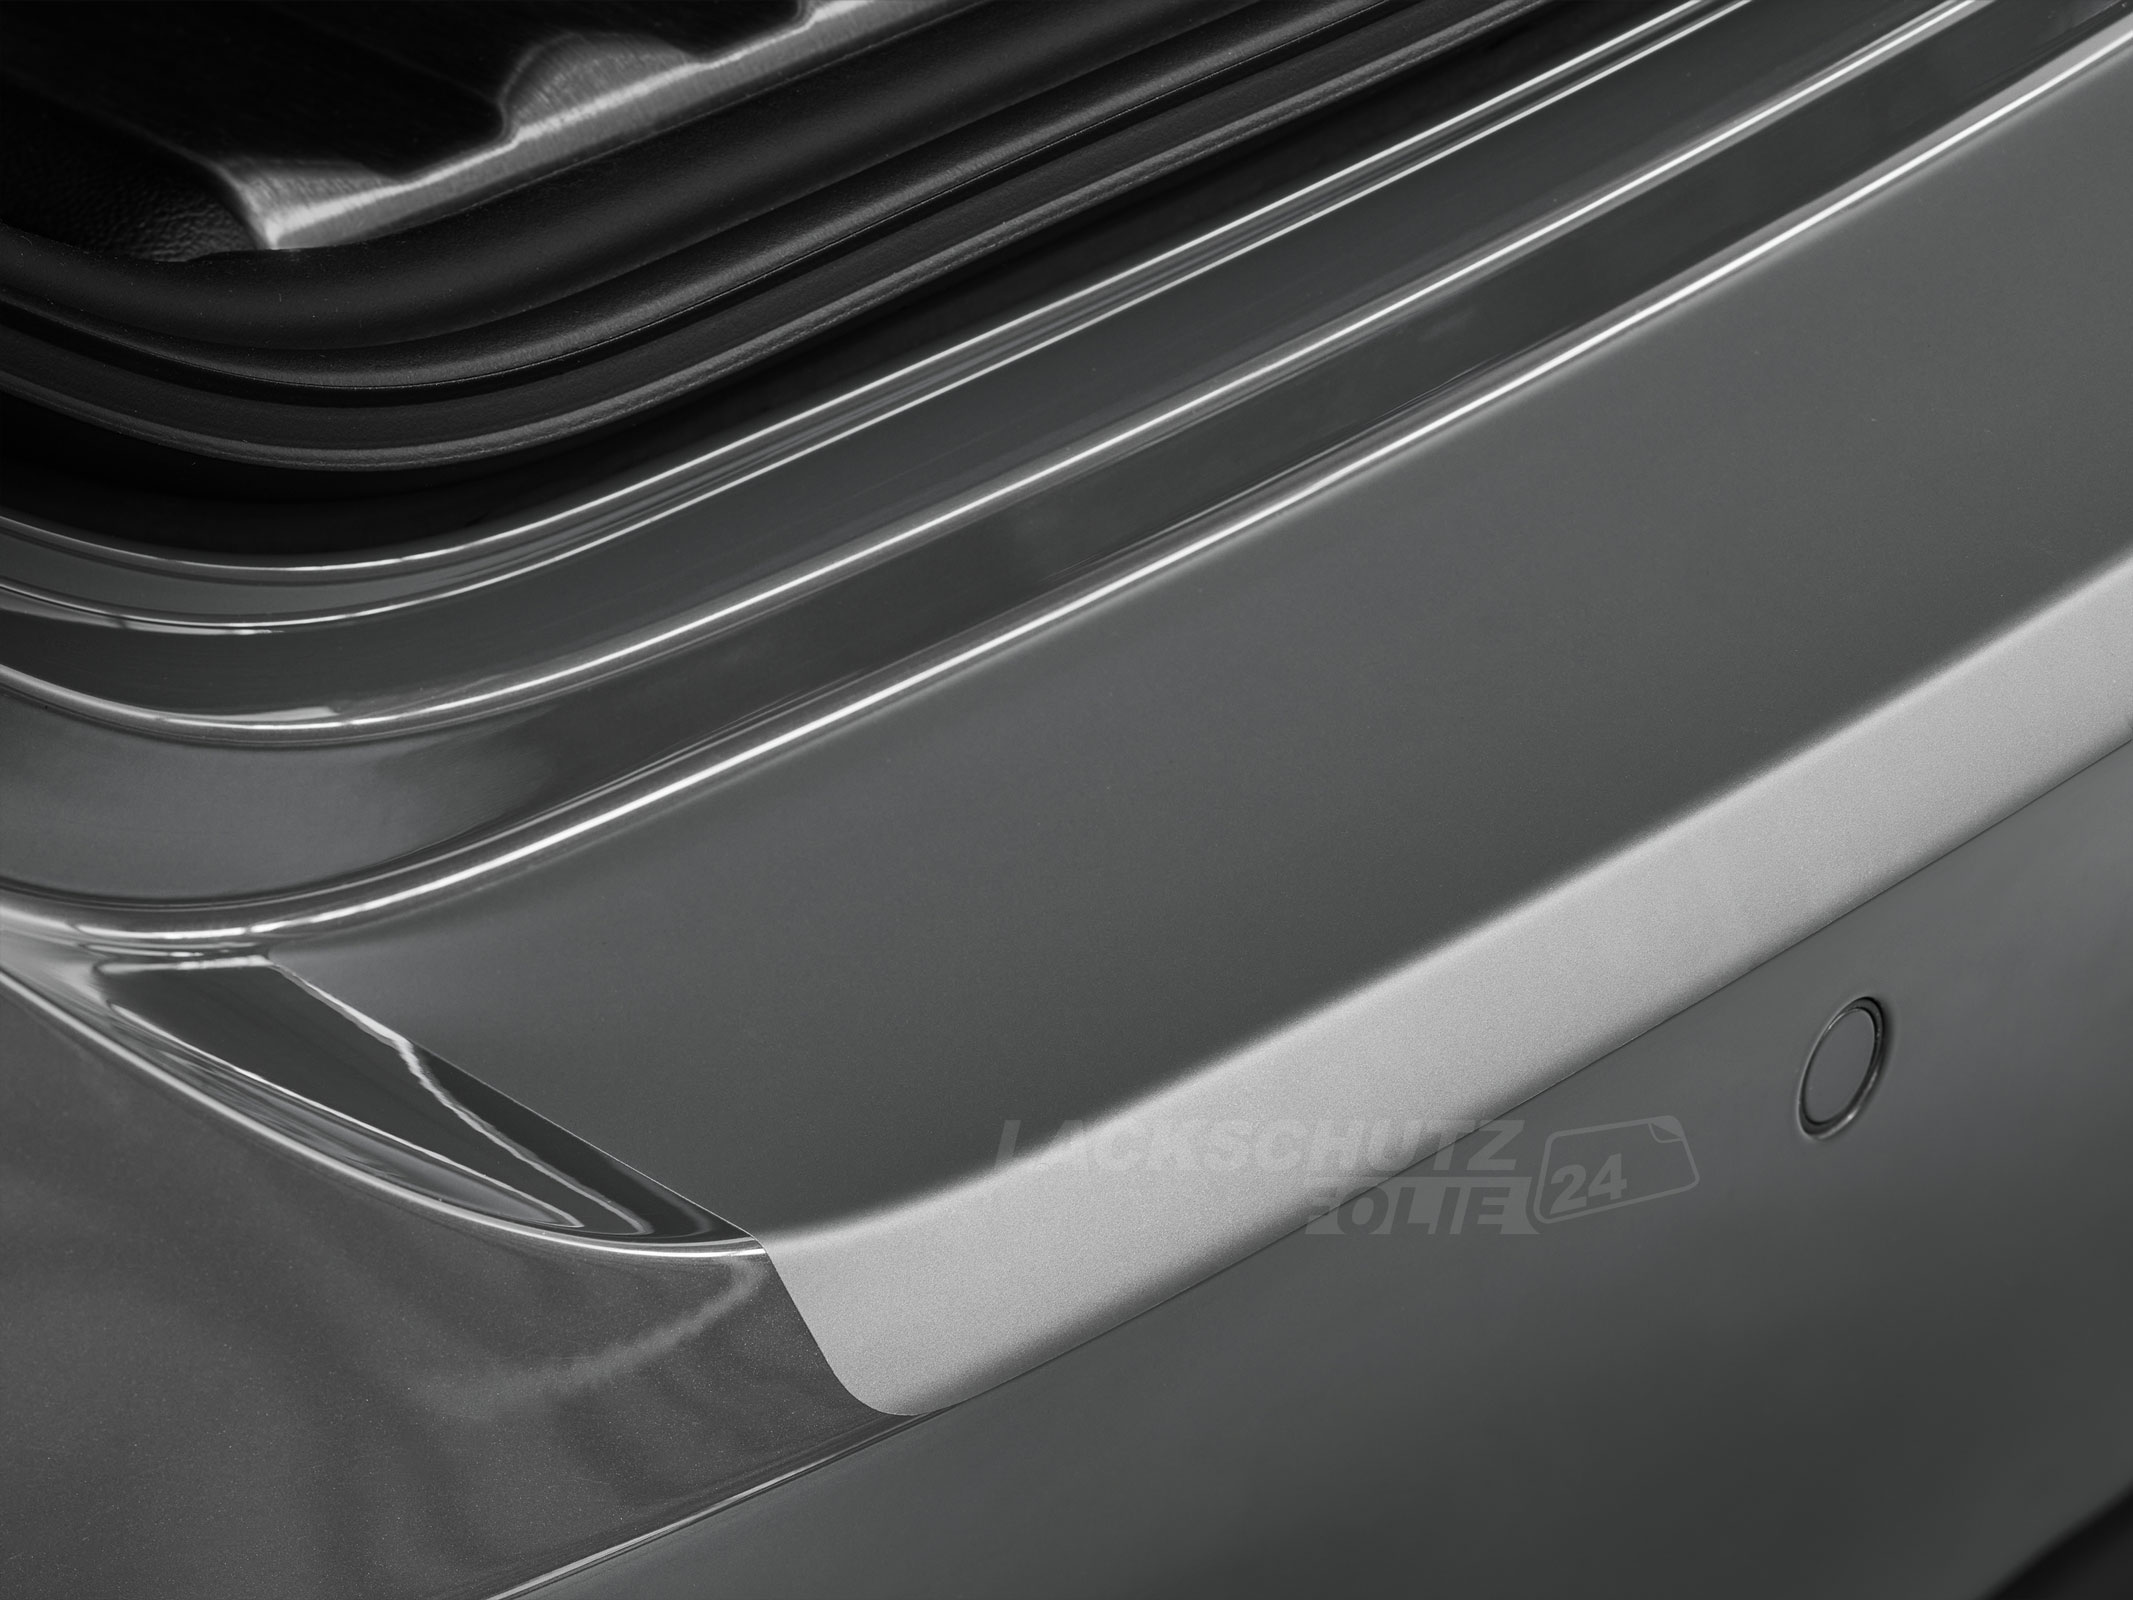 Ladekantenschutzfolie - Transparent Glatt MATT 110 µm stark  für BMW X6 Typ G06, ab BJ 11/2019